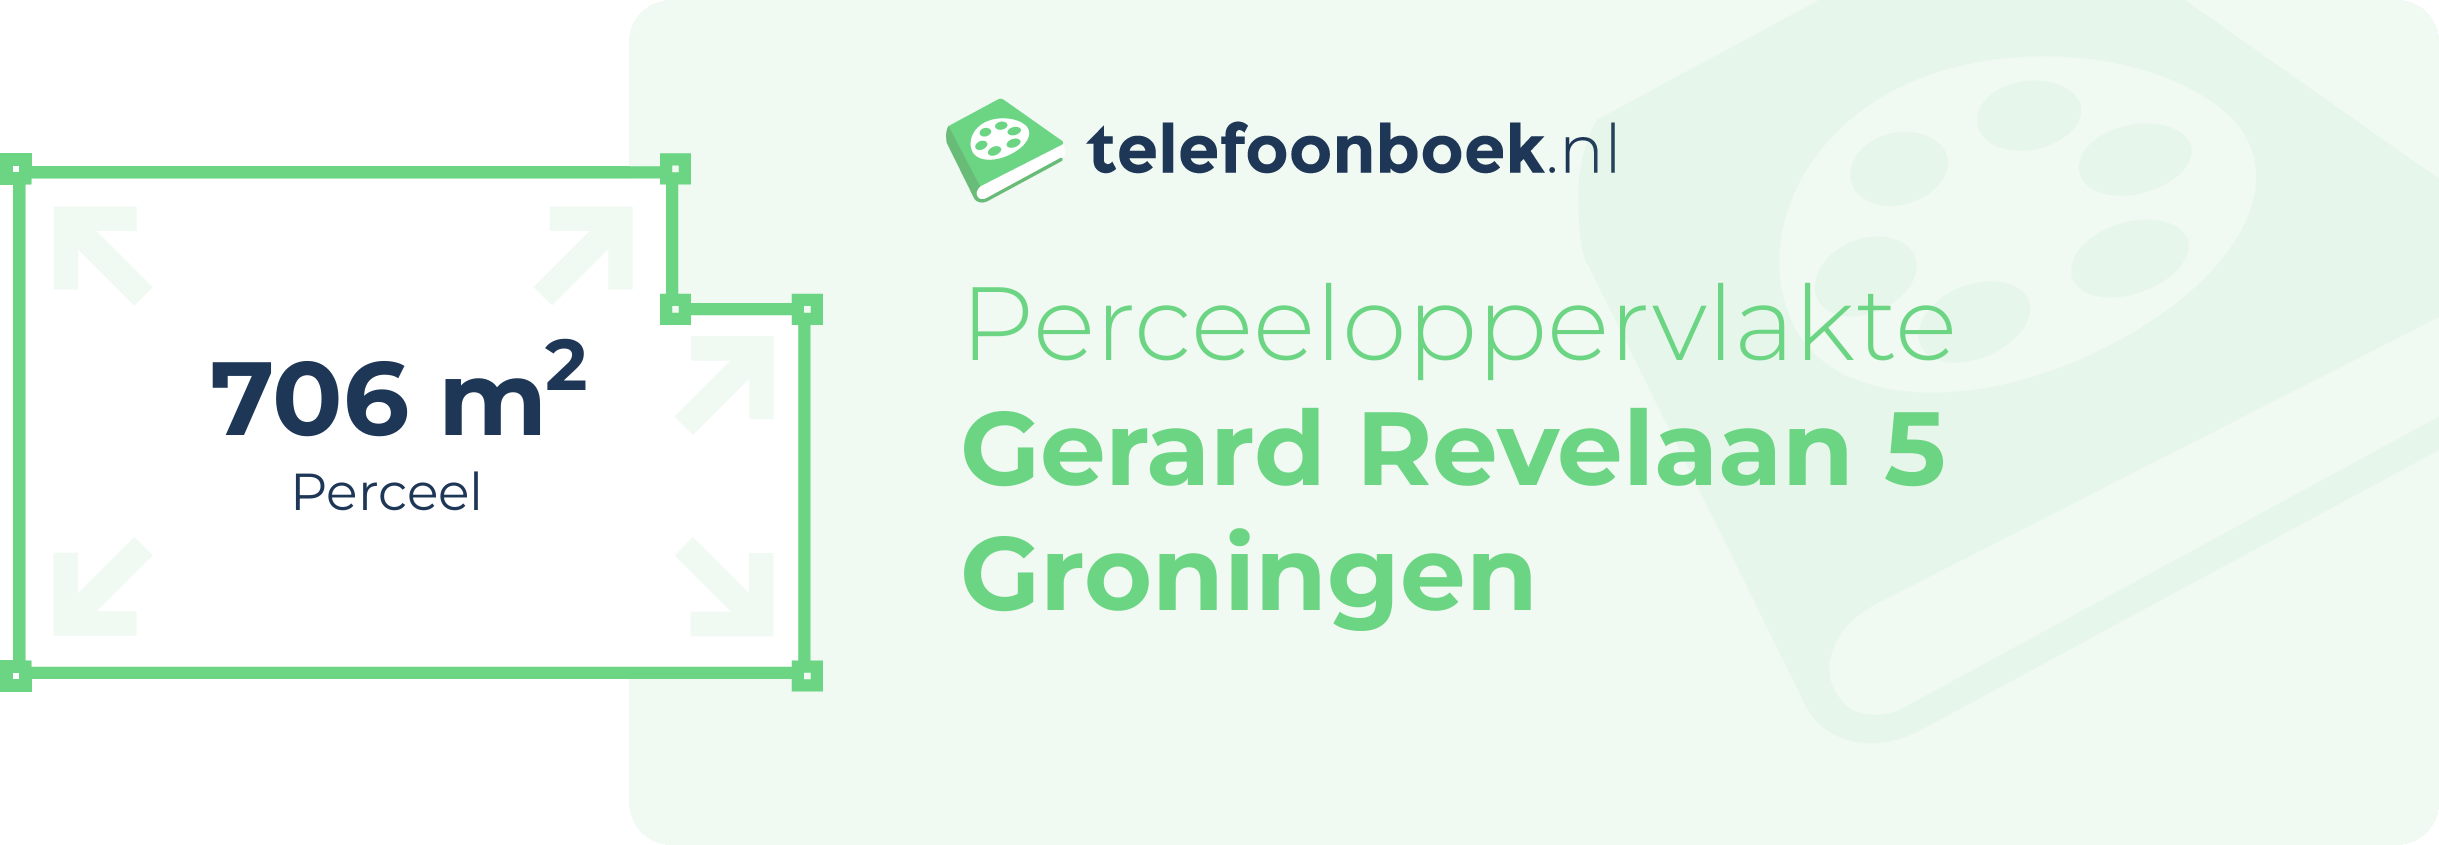 Perceeloppervlakte Gerard Revelaan 5 Groningen